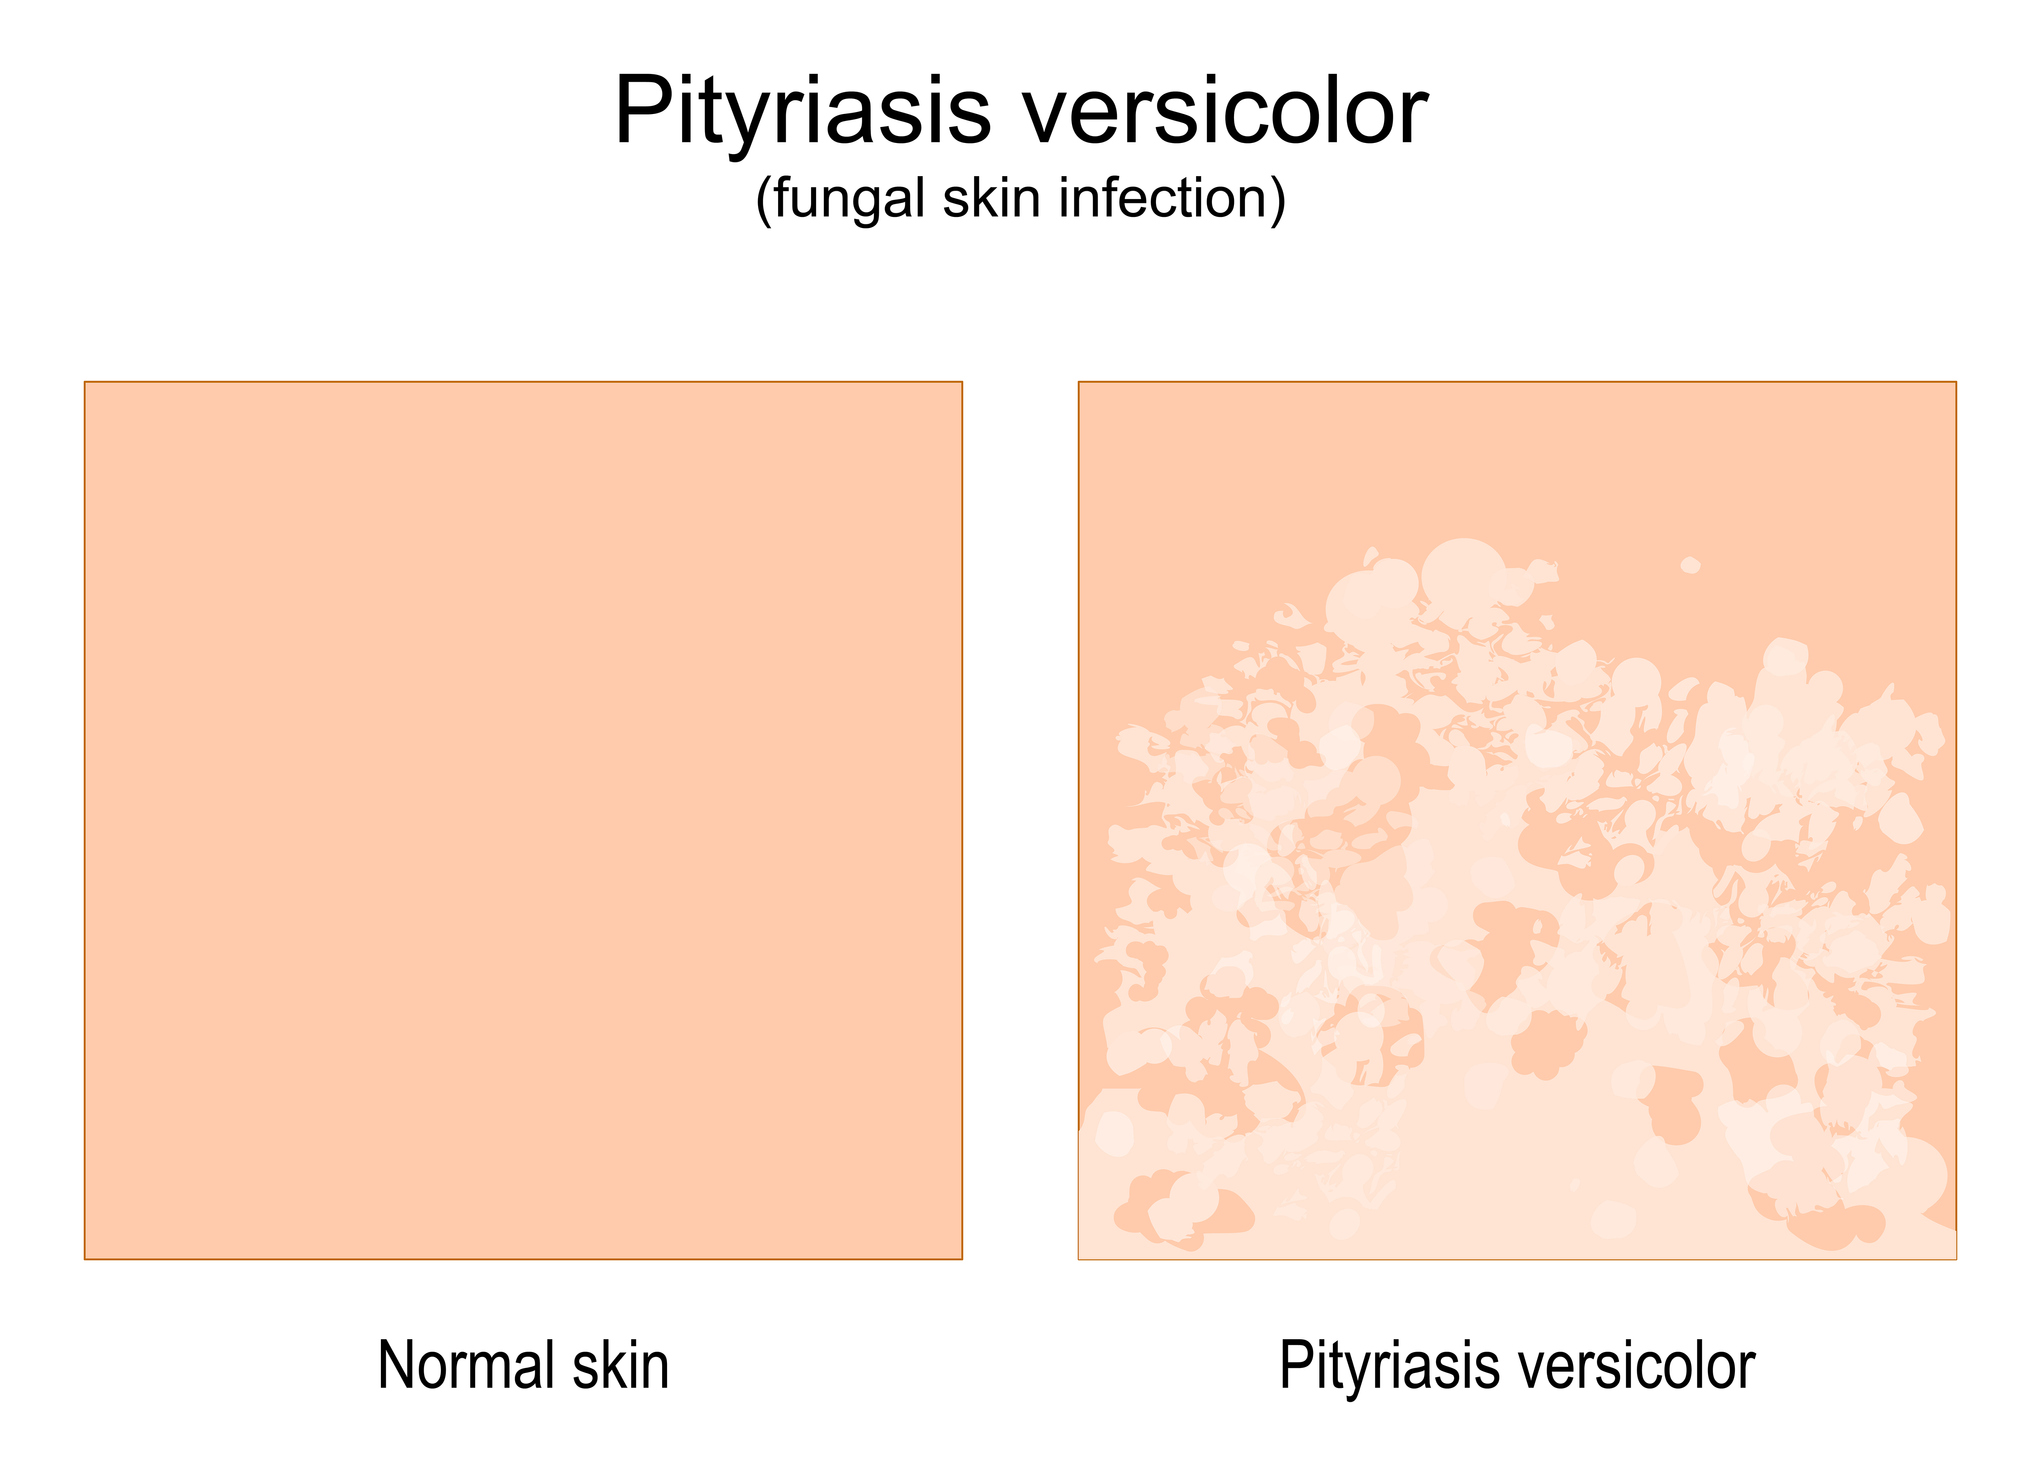 Vergleich von normaler Haut und Haut mit Krankheitsanzeichen